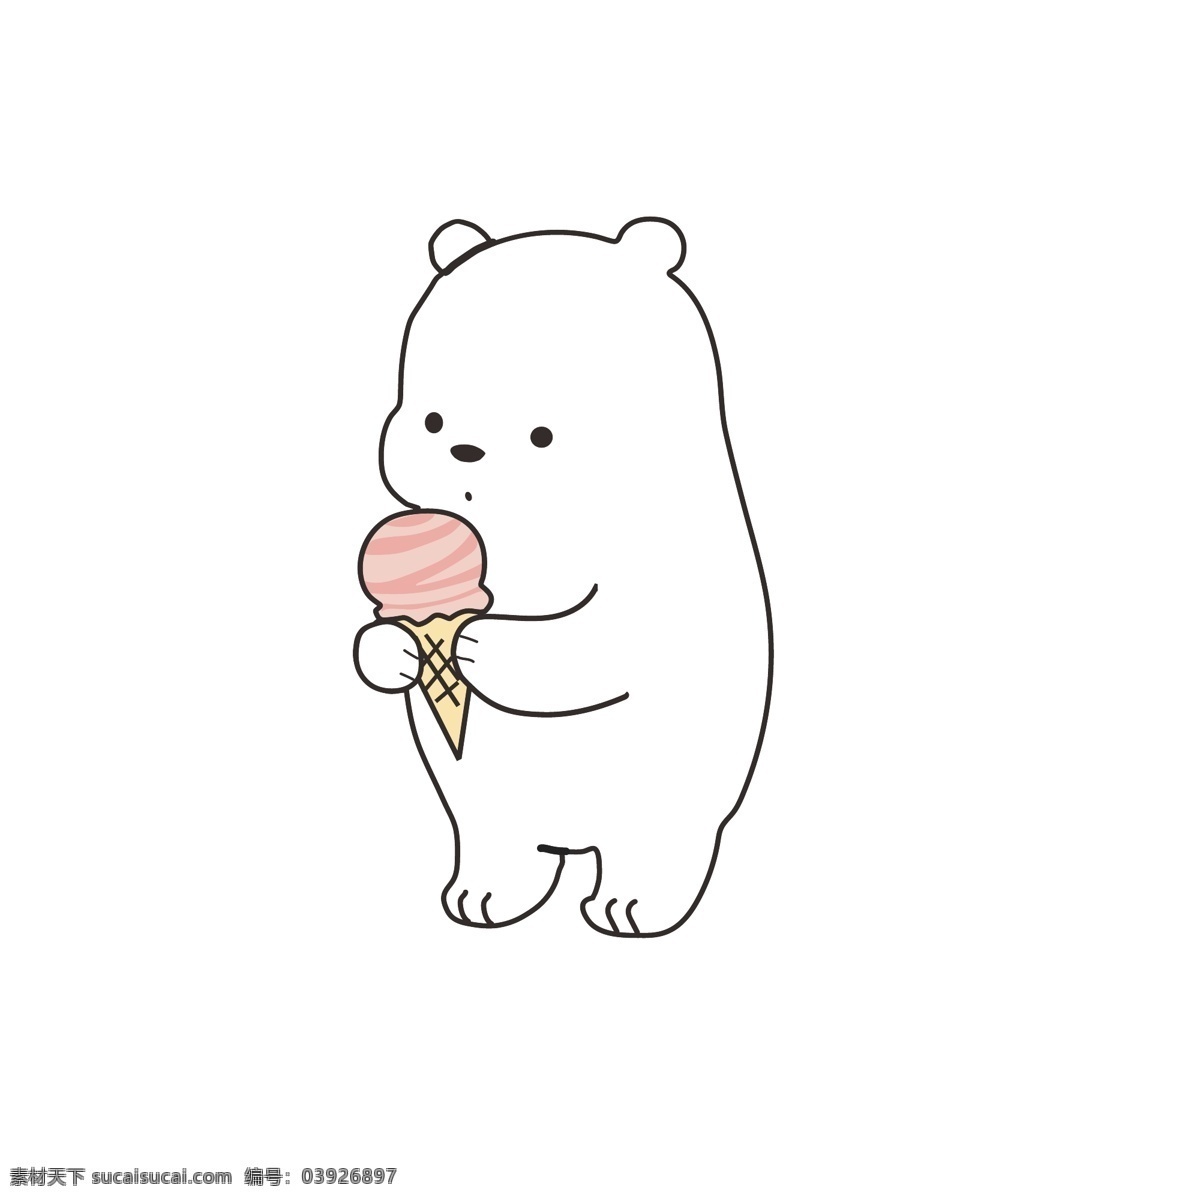 百日 宴 生日 手绘 可爱 小白 熊 小白熊 表情包 百日宴素材 生日宴素材 白色小熊可爱